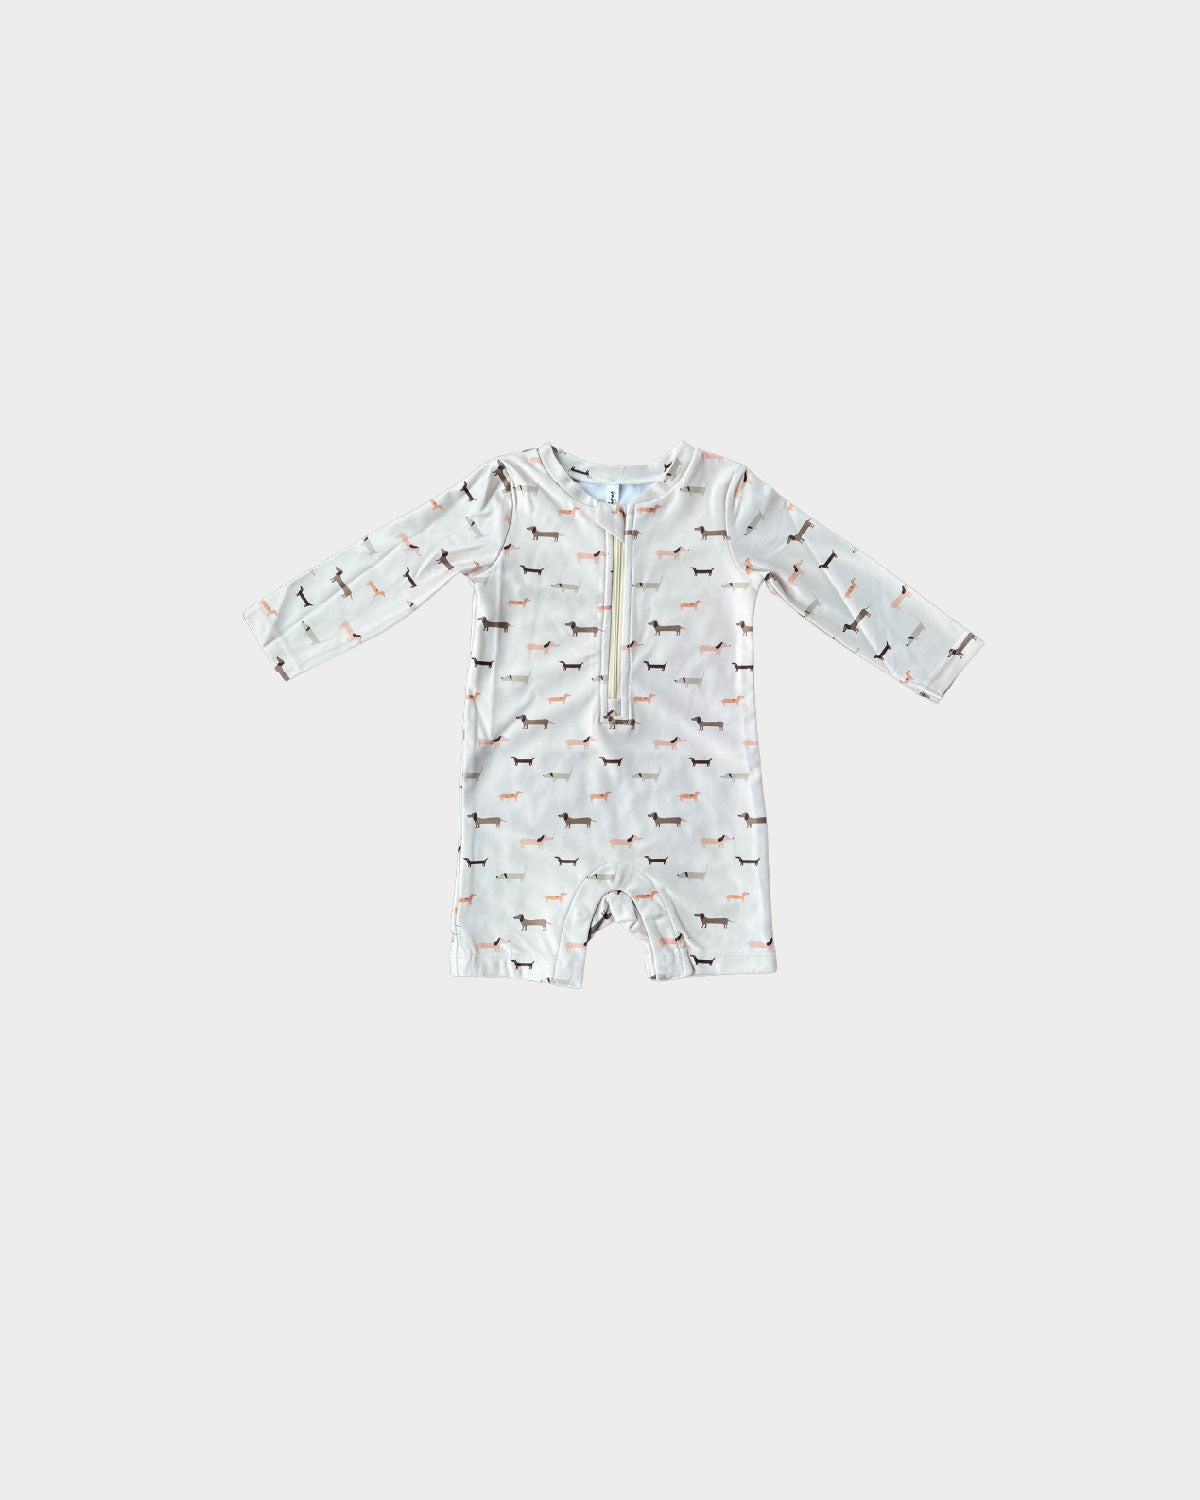 Baby One-Piece Rashguard Swim Suit